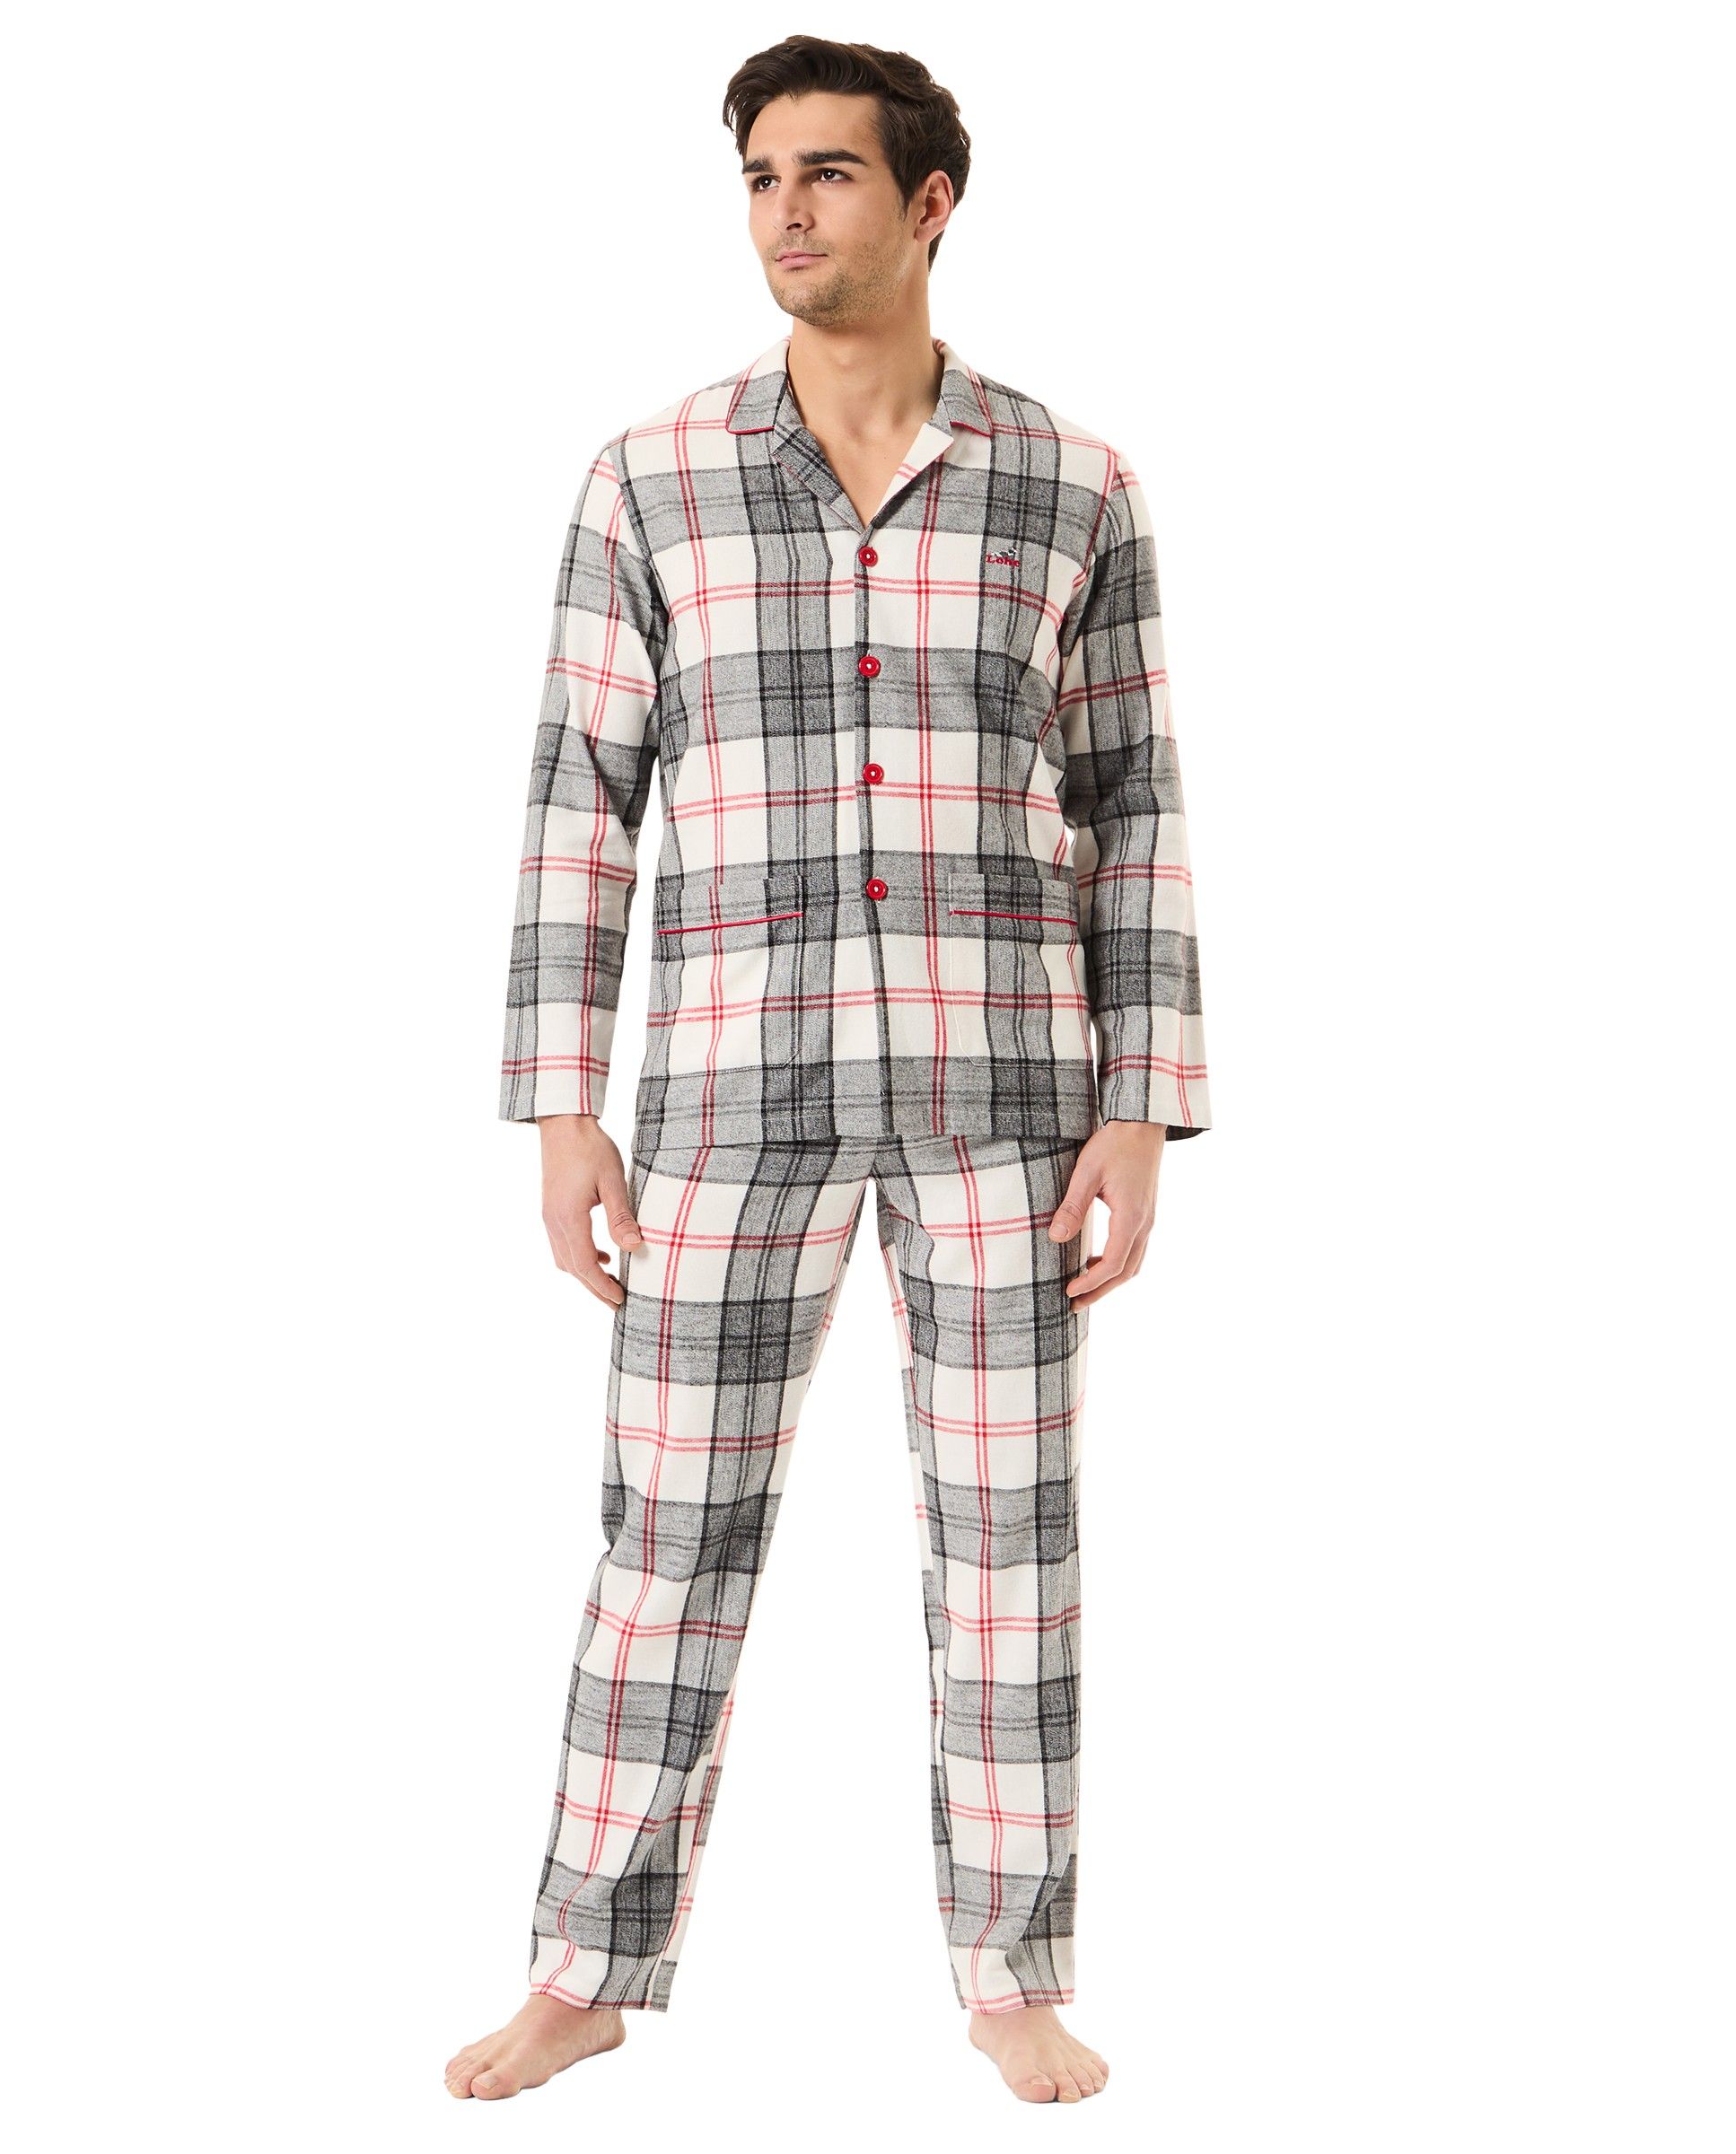 Hombre con pijama de invierno abierto a cuadros